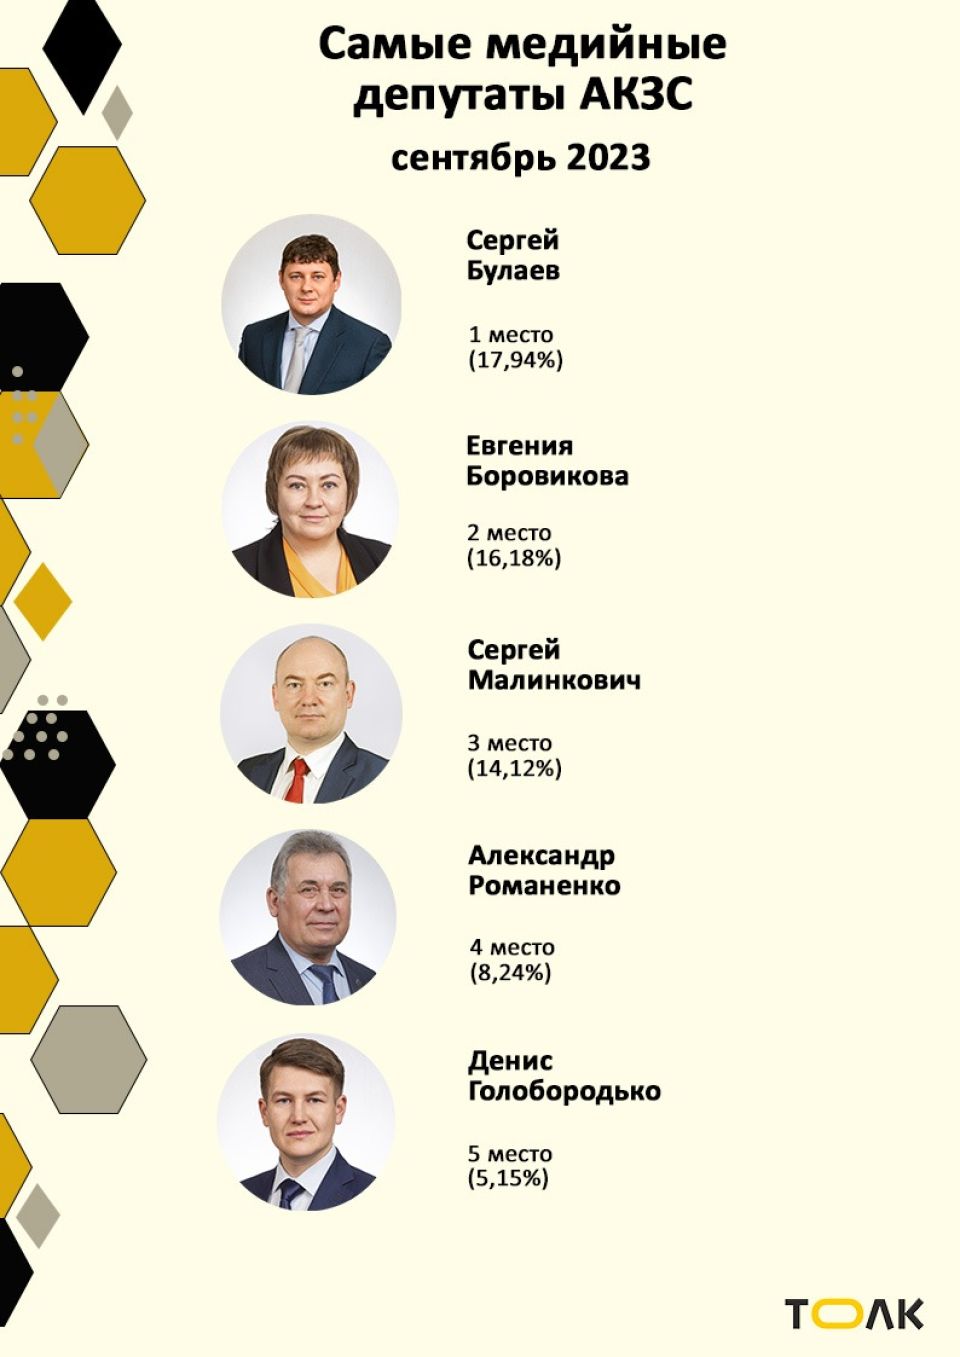 Рейтинг медийности депутатов АКЗС в сентябре 2023 года